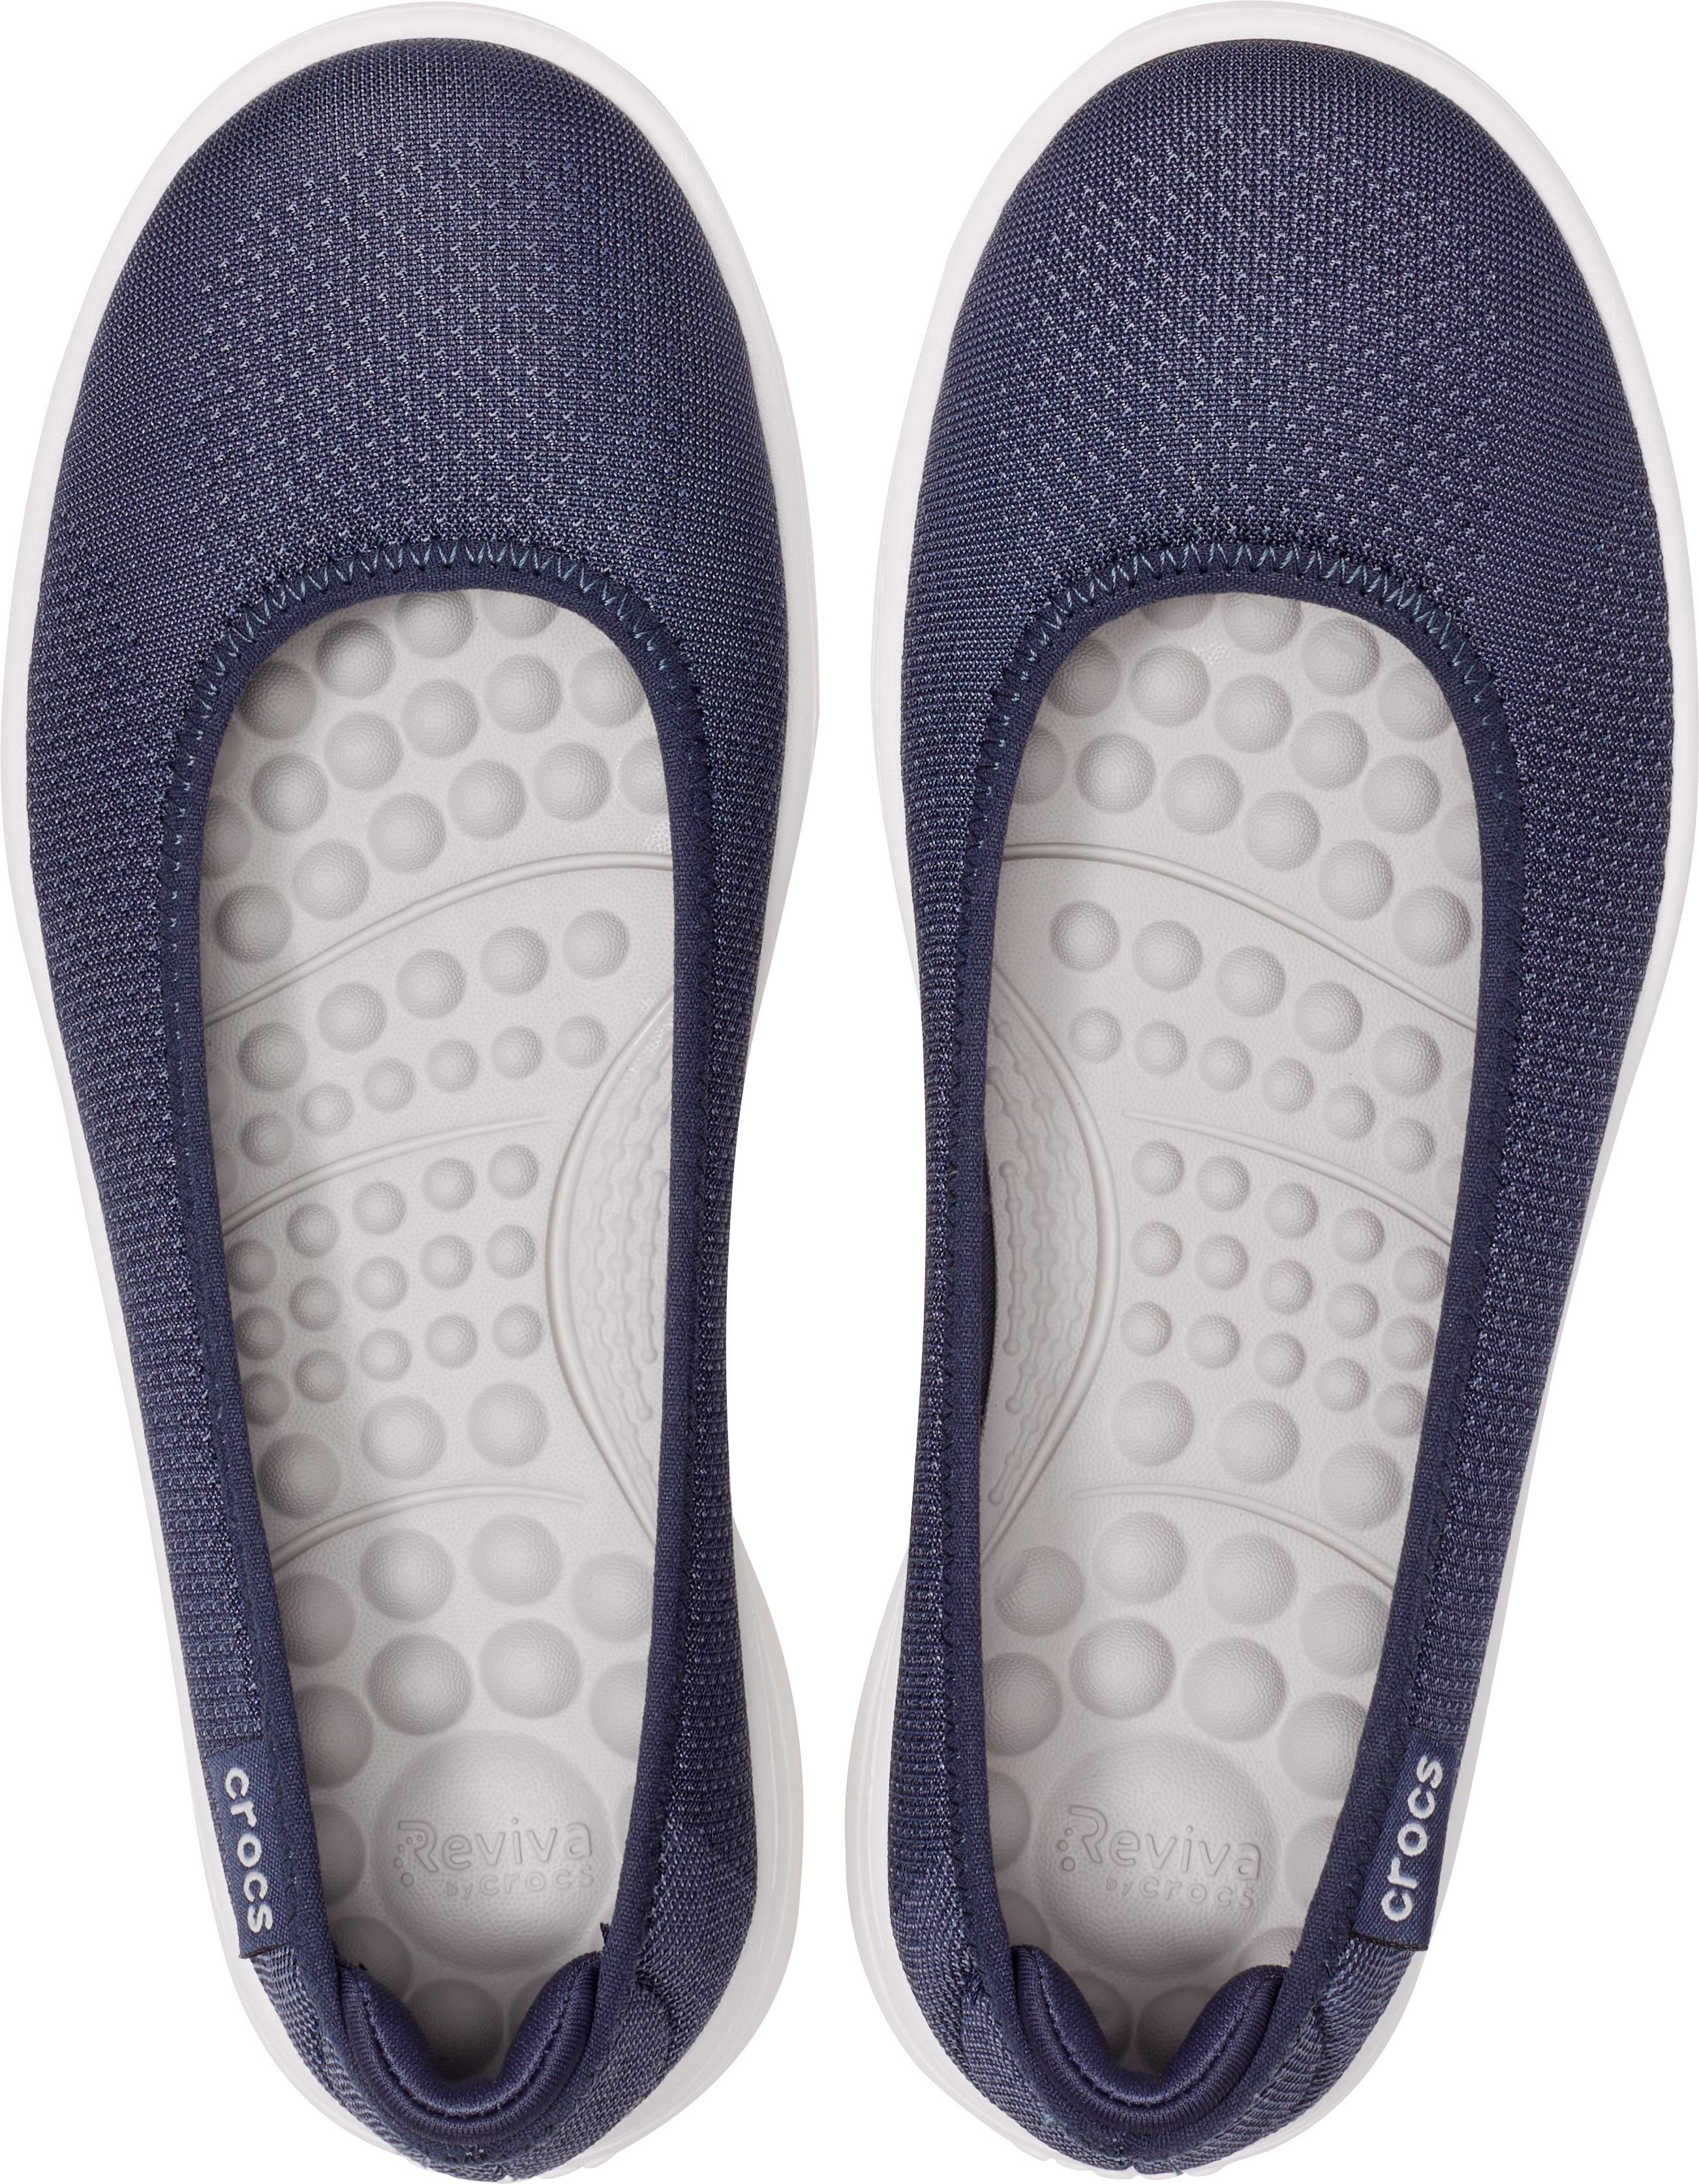 Women's Crocs Reviva™ Flat - Crocs